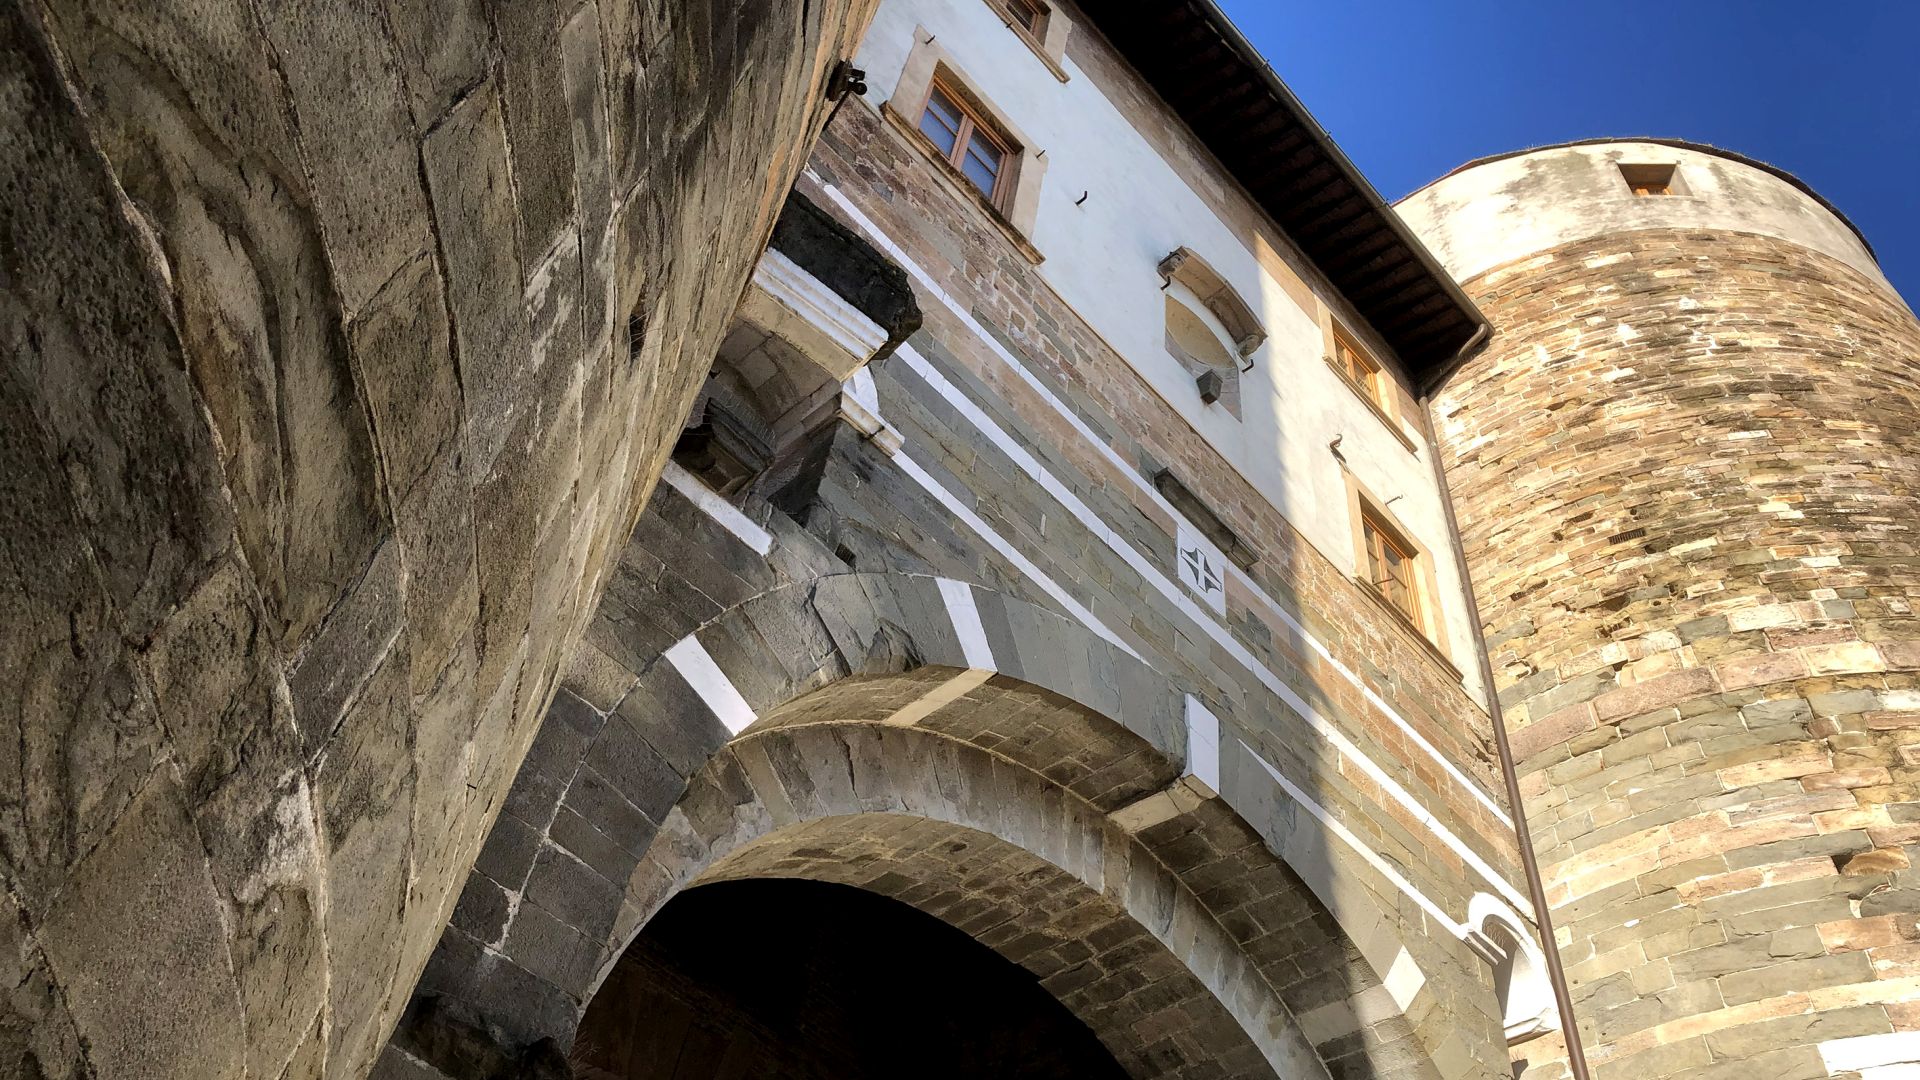 Porta San Gervasio der mittelalterlichen Mauer von Lucca